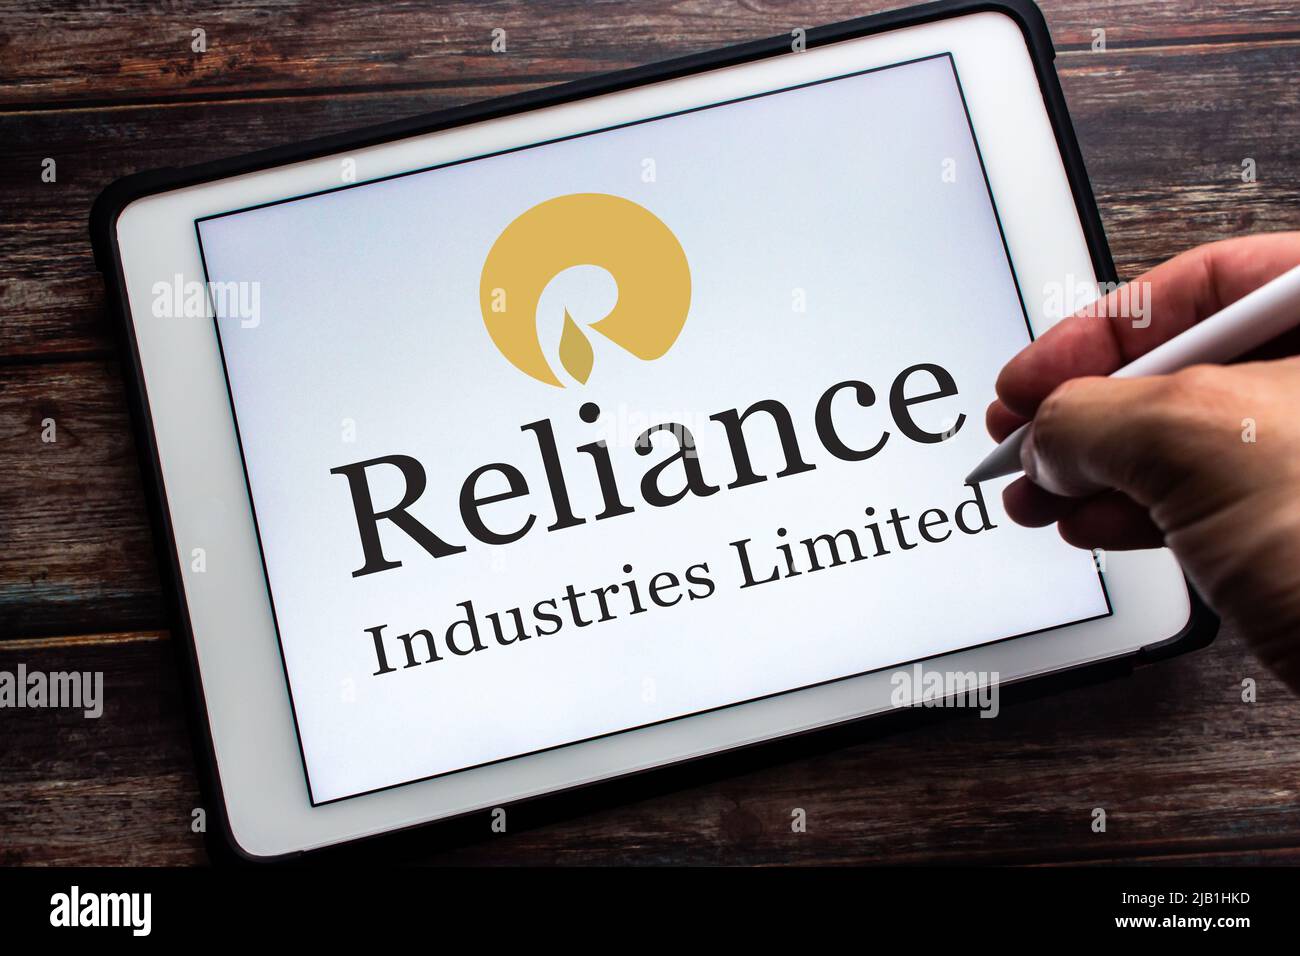 Kumamoto, JAPON - juillet 9 2021 : logo de la société indienne Conglomérat Reliance Industries Limited (RIL) sur tablette. Homme main tenant un stylo. Banque D'Images